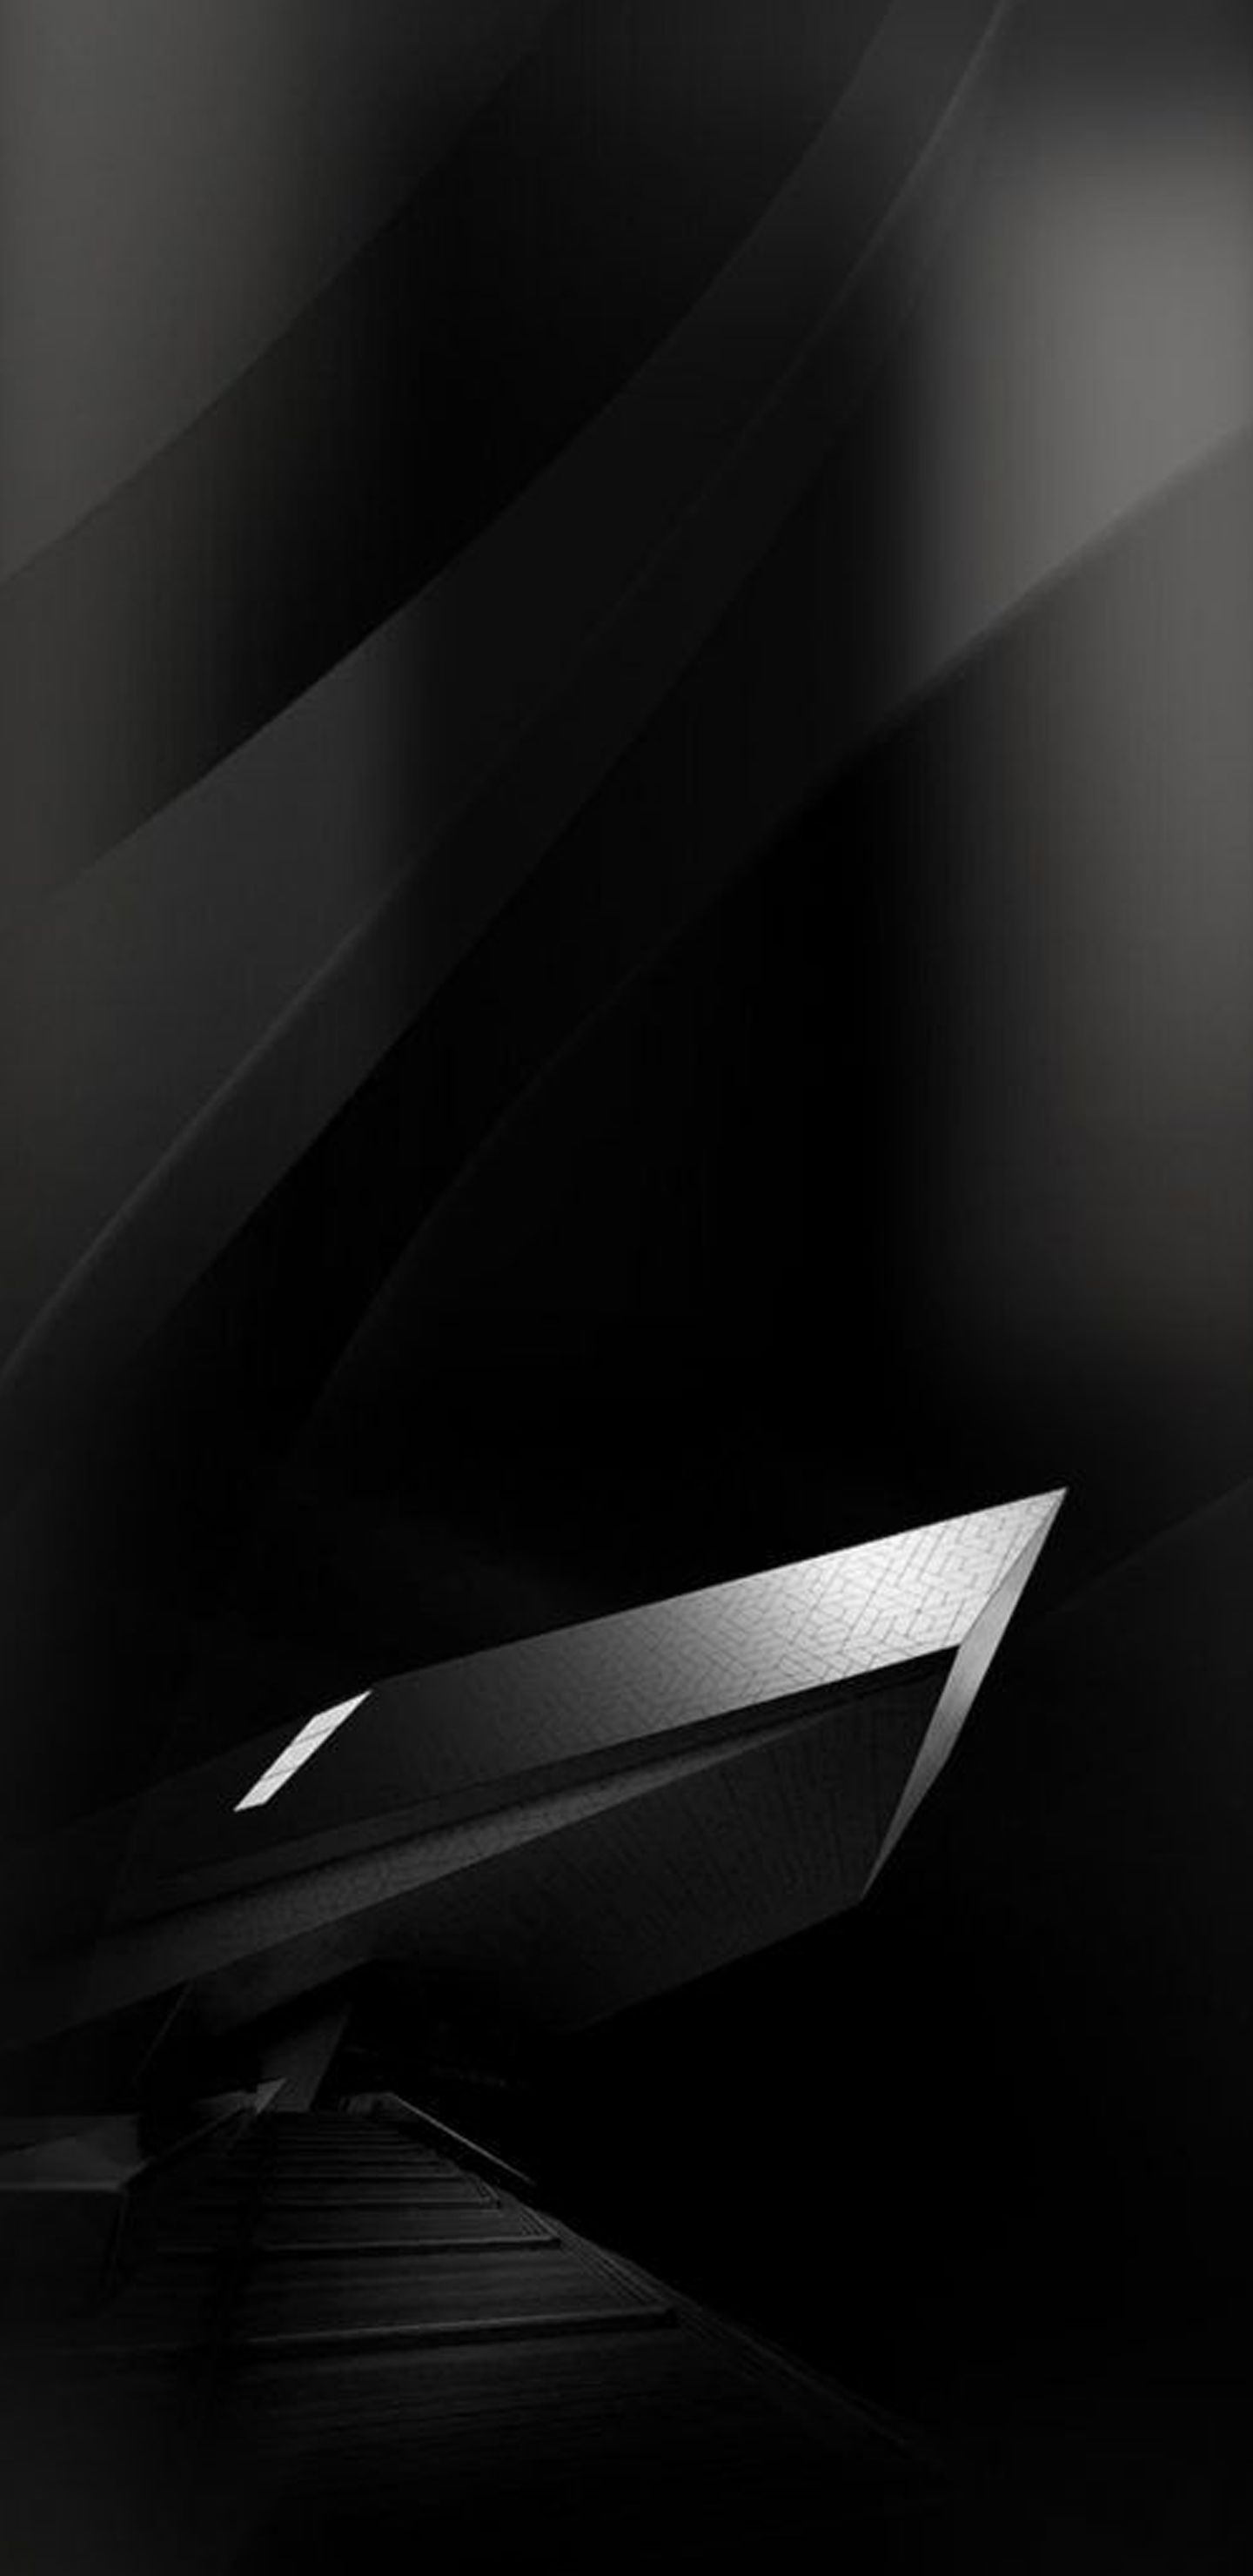 samsung s8 fondo de pantalla,negro,blanco,en blanco y negro,puerta del vehículo,fotografía monocroma